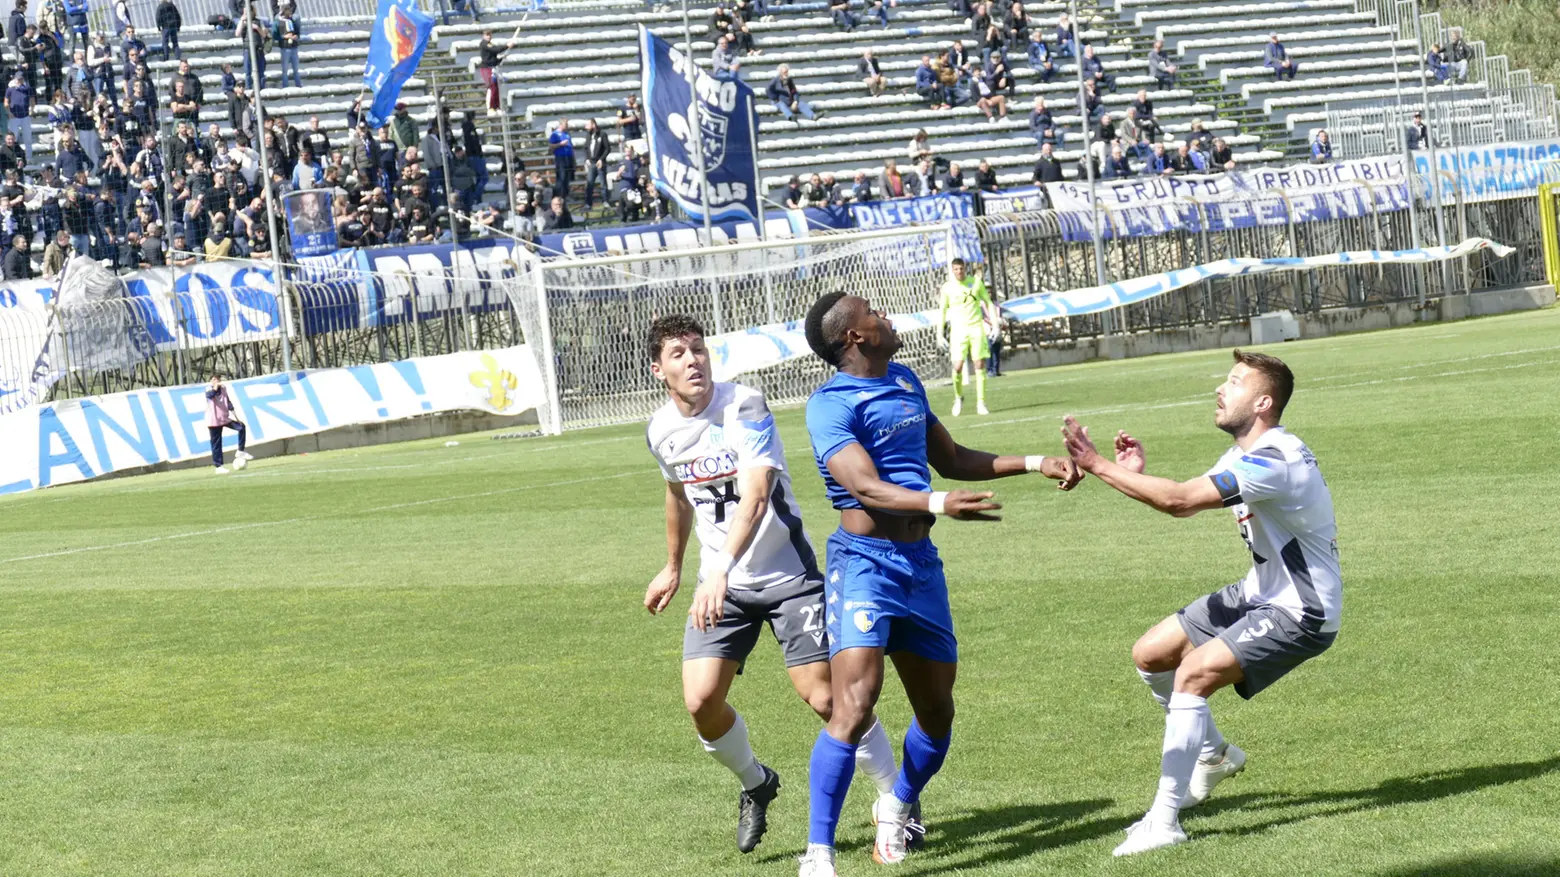 Prato-United Riccione, un momento della partita (Foto Attalmi)